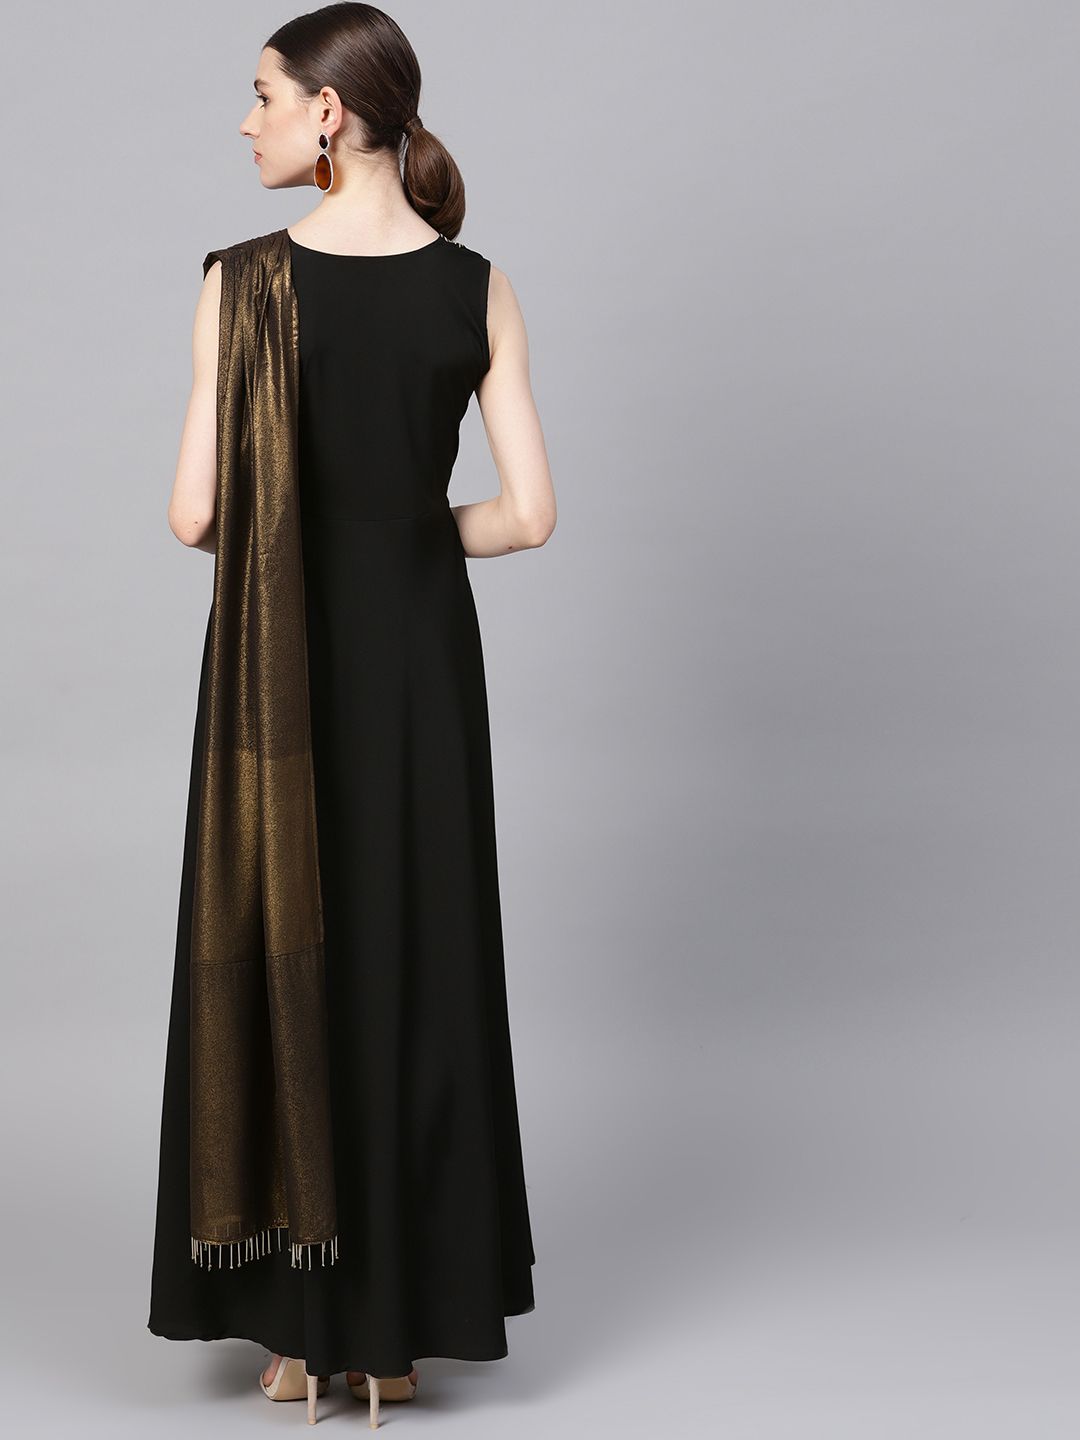 Black & Gold Draped Dress